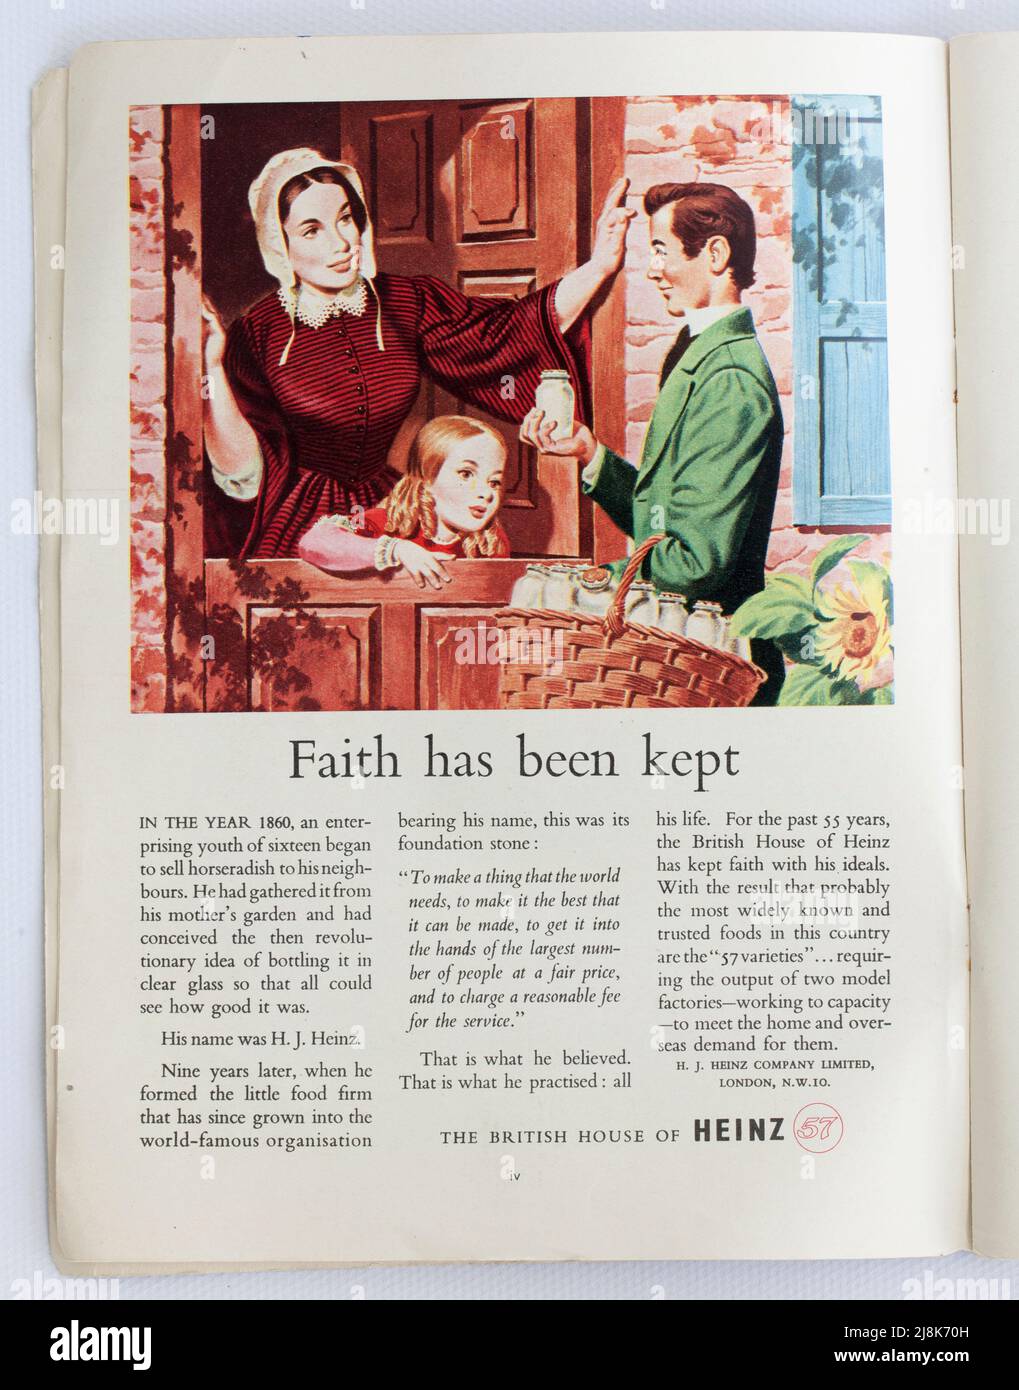 Alte 1950s britische Werbung für Heinz Foods Stockfoto